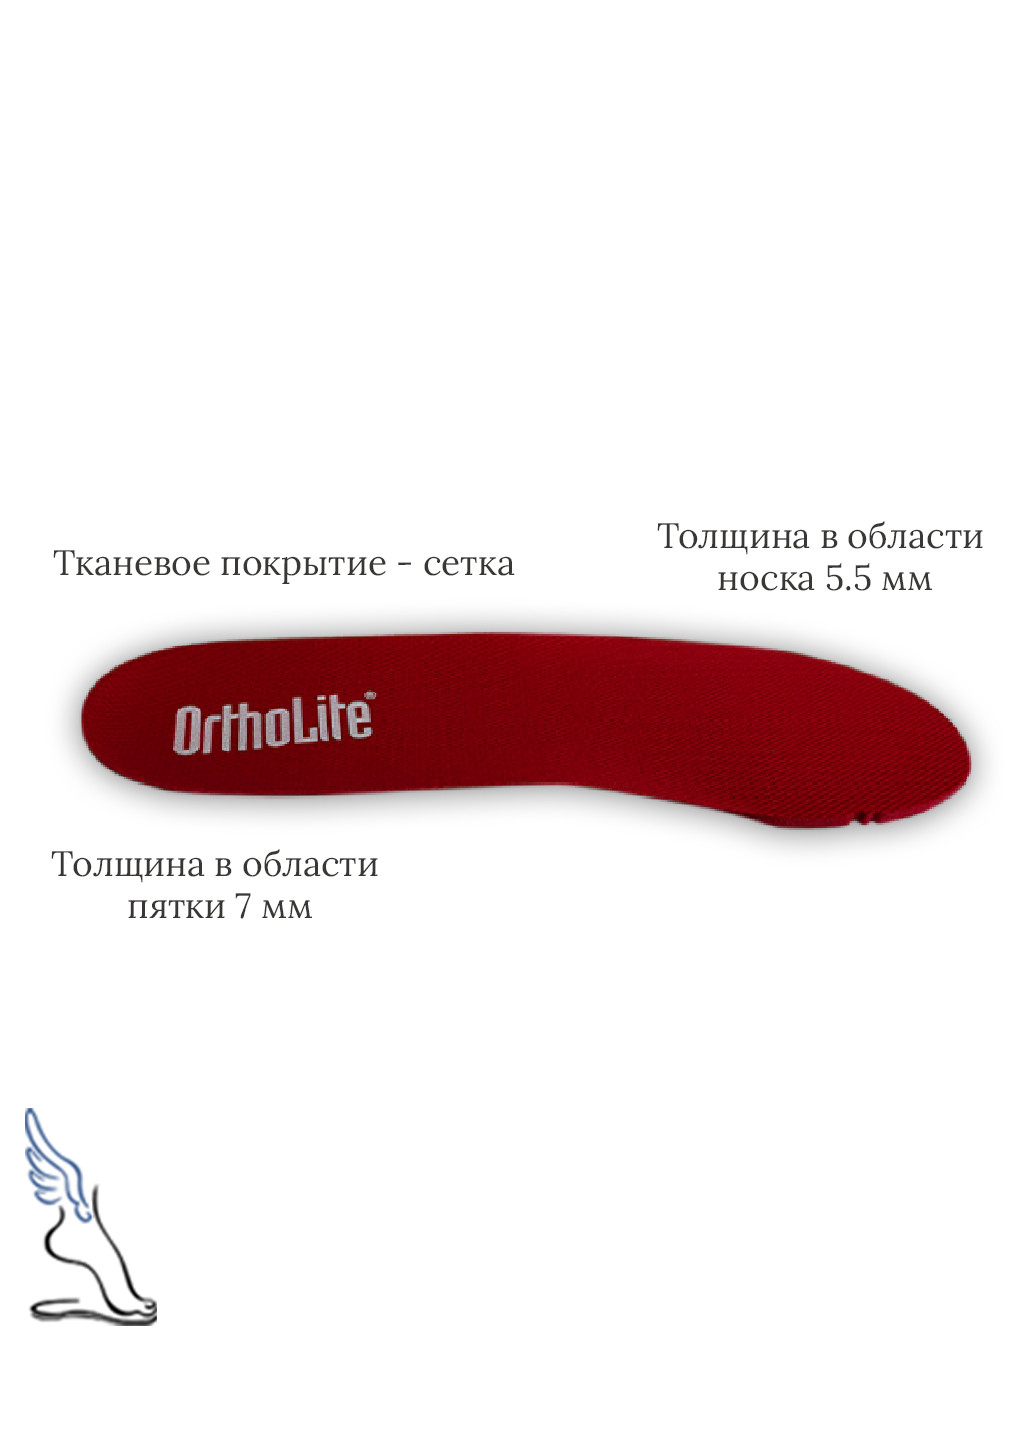 Устілки для спортивного взуття "Ortholite" No Brand червоні